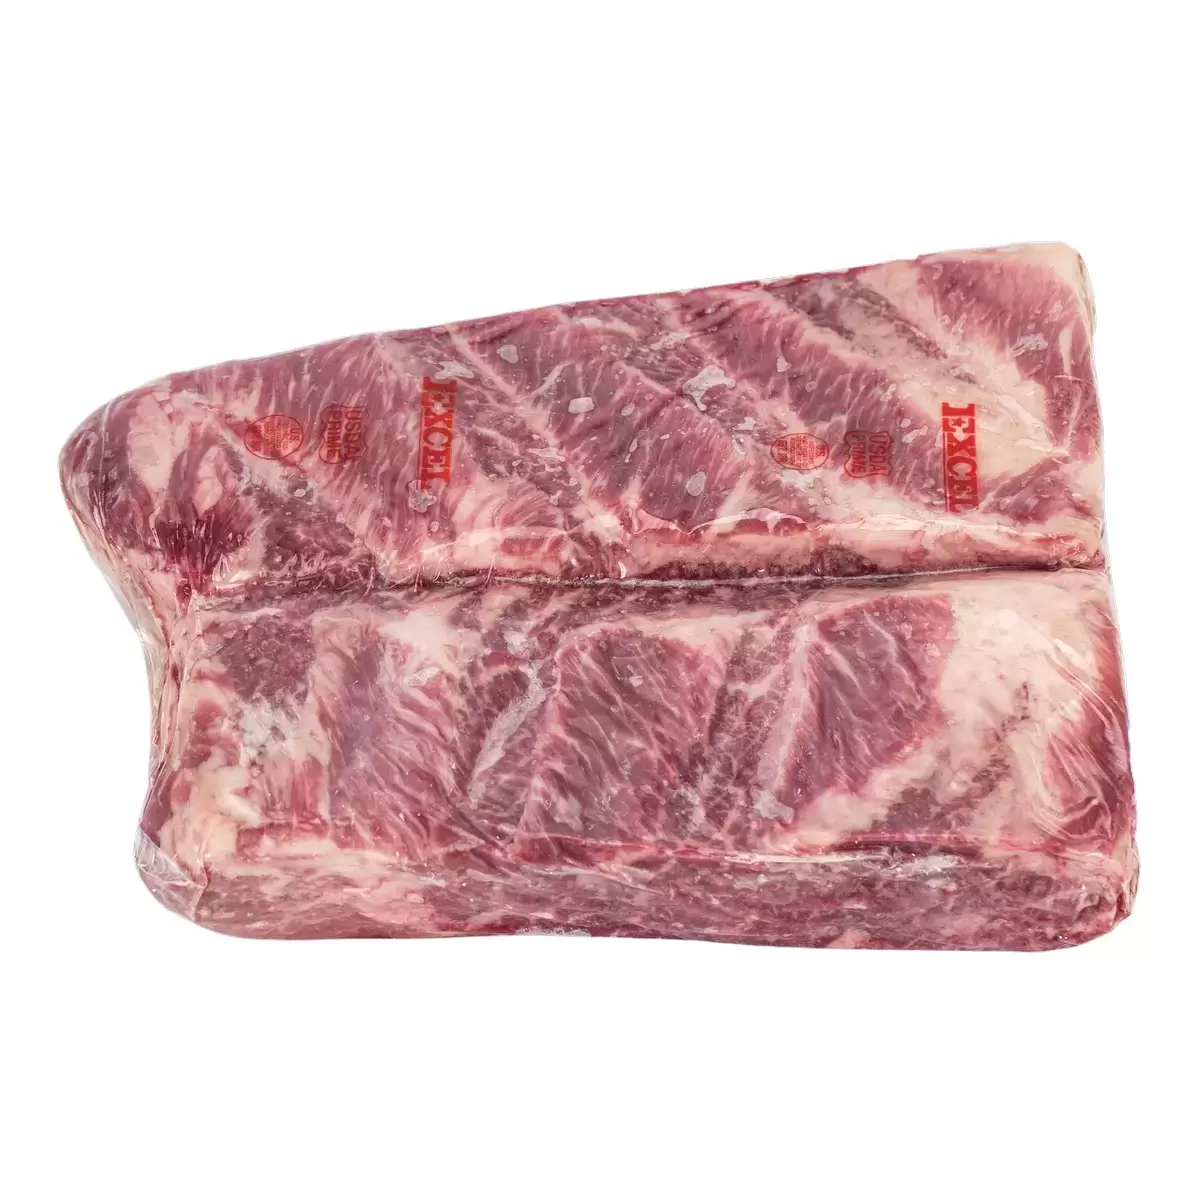 美國頂級冷凍翼板肉 18公斤 / 箱